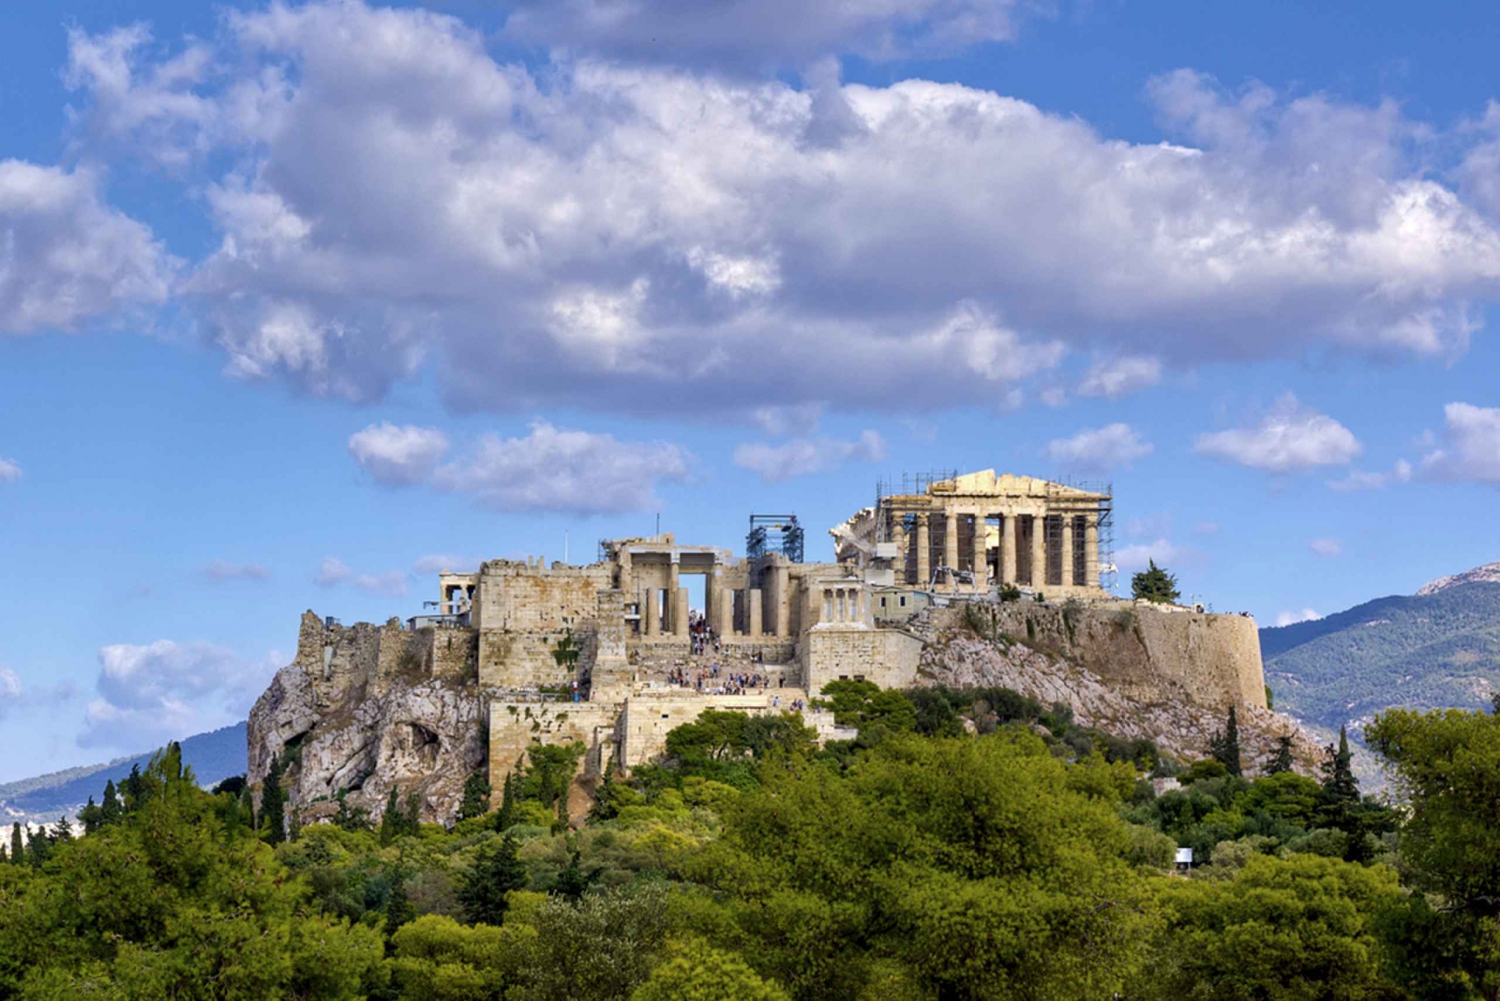 Athens: Parthenon Temple Virtual Tour From Home